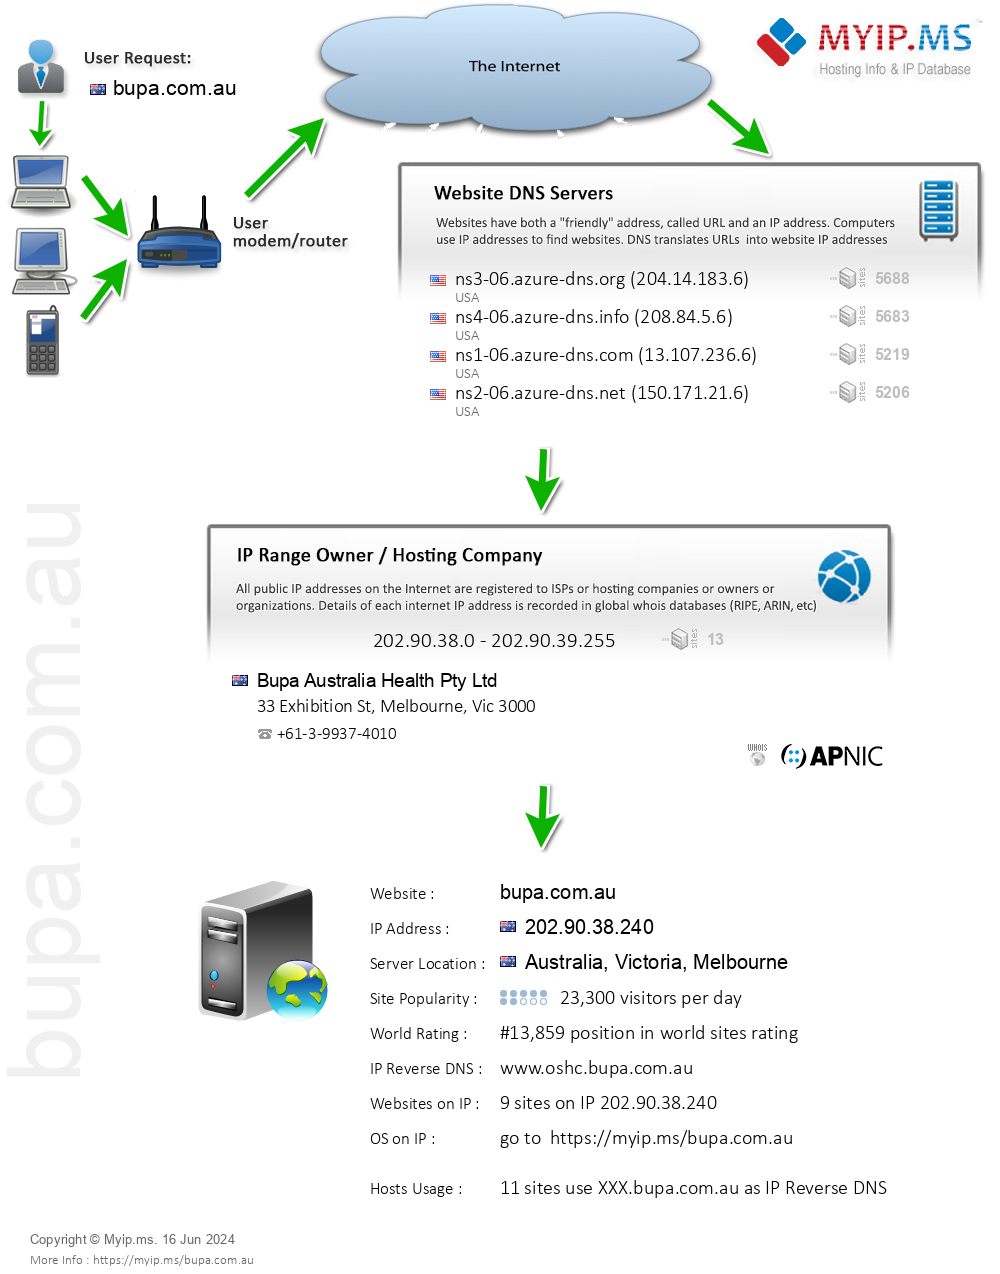 Bupa.com.au - Website Hosting Visual IP Diagram